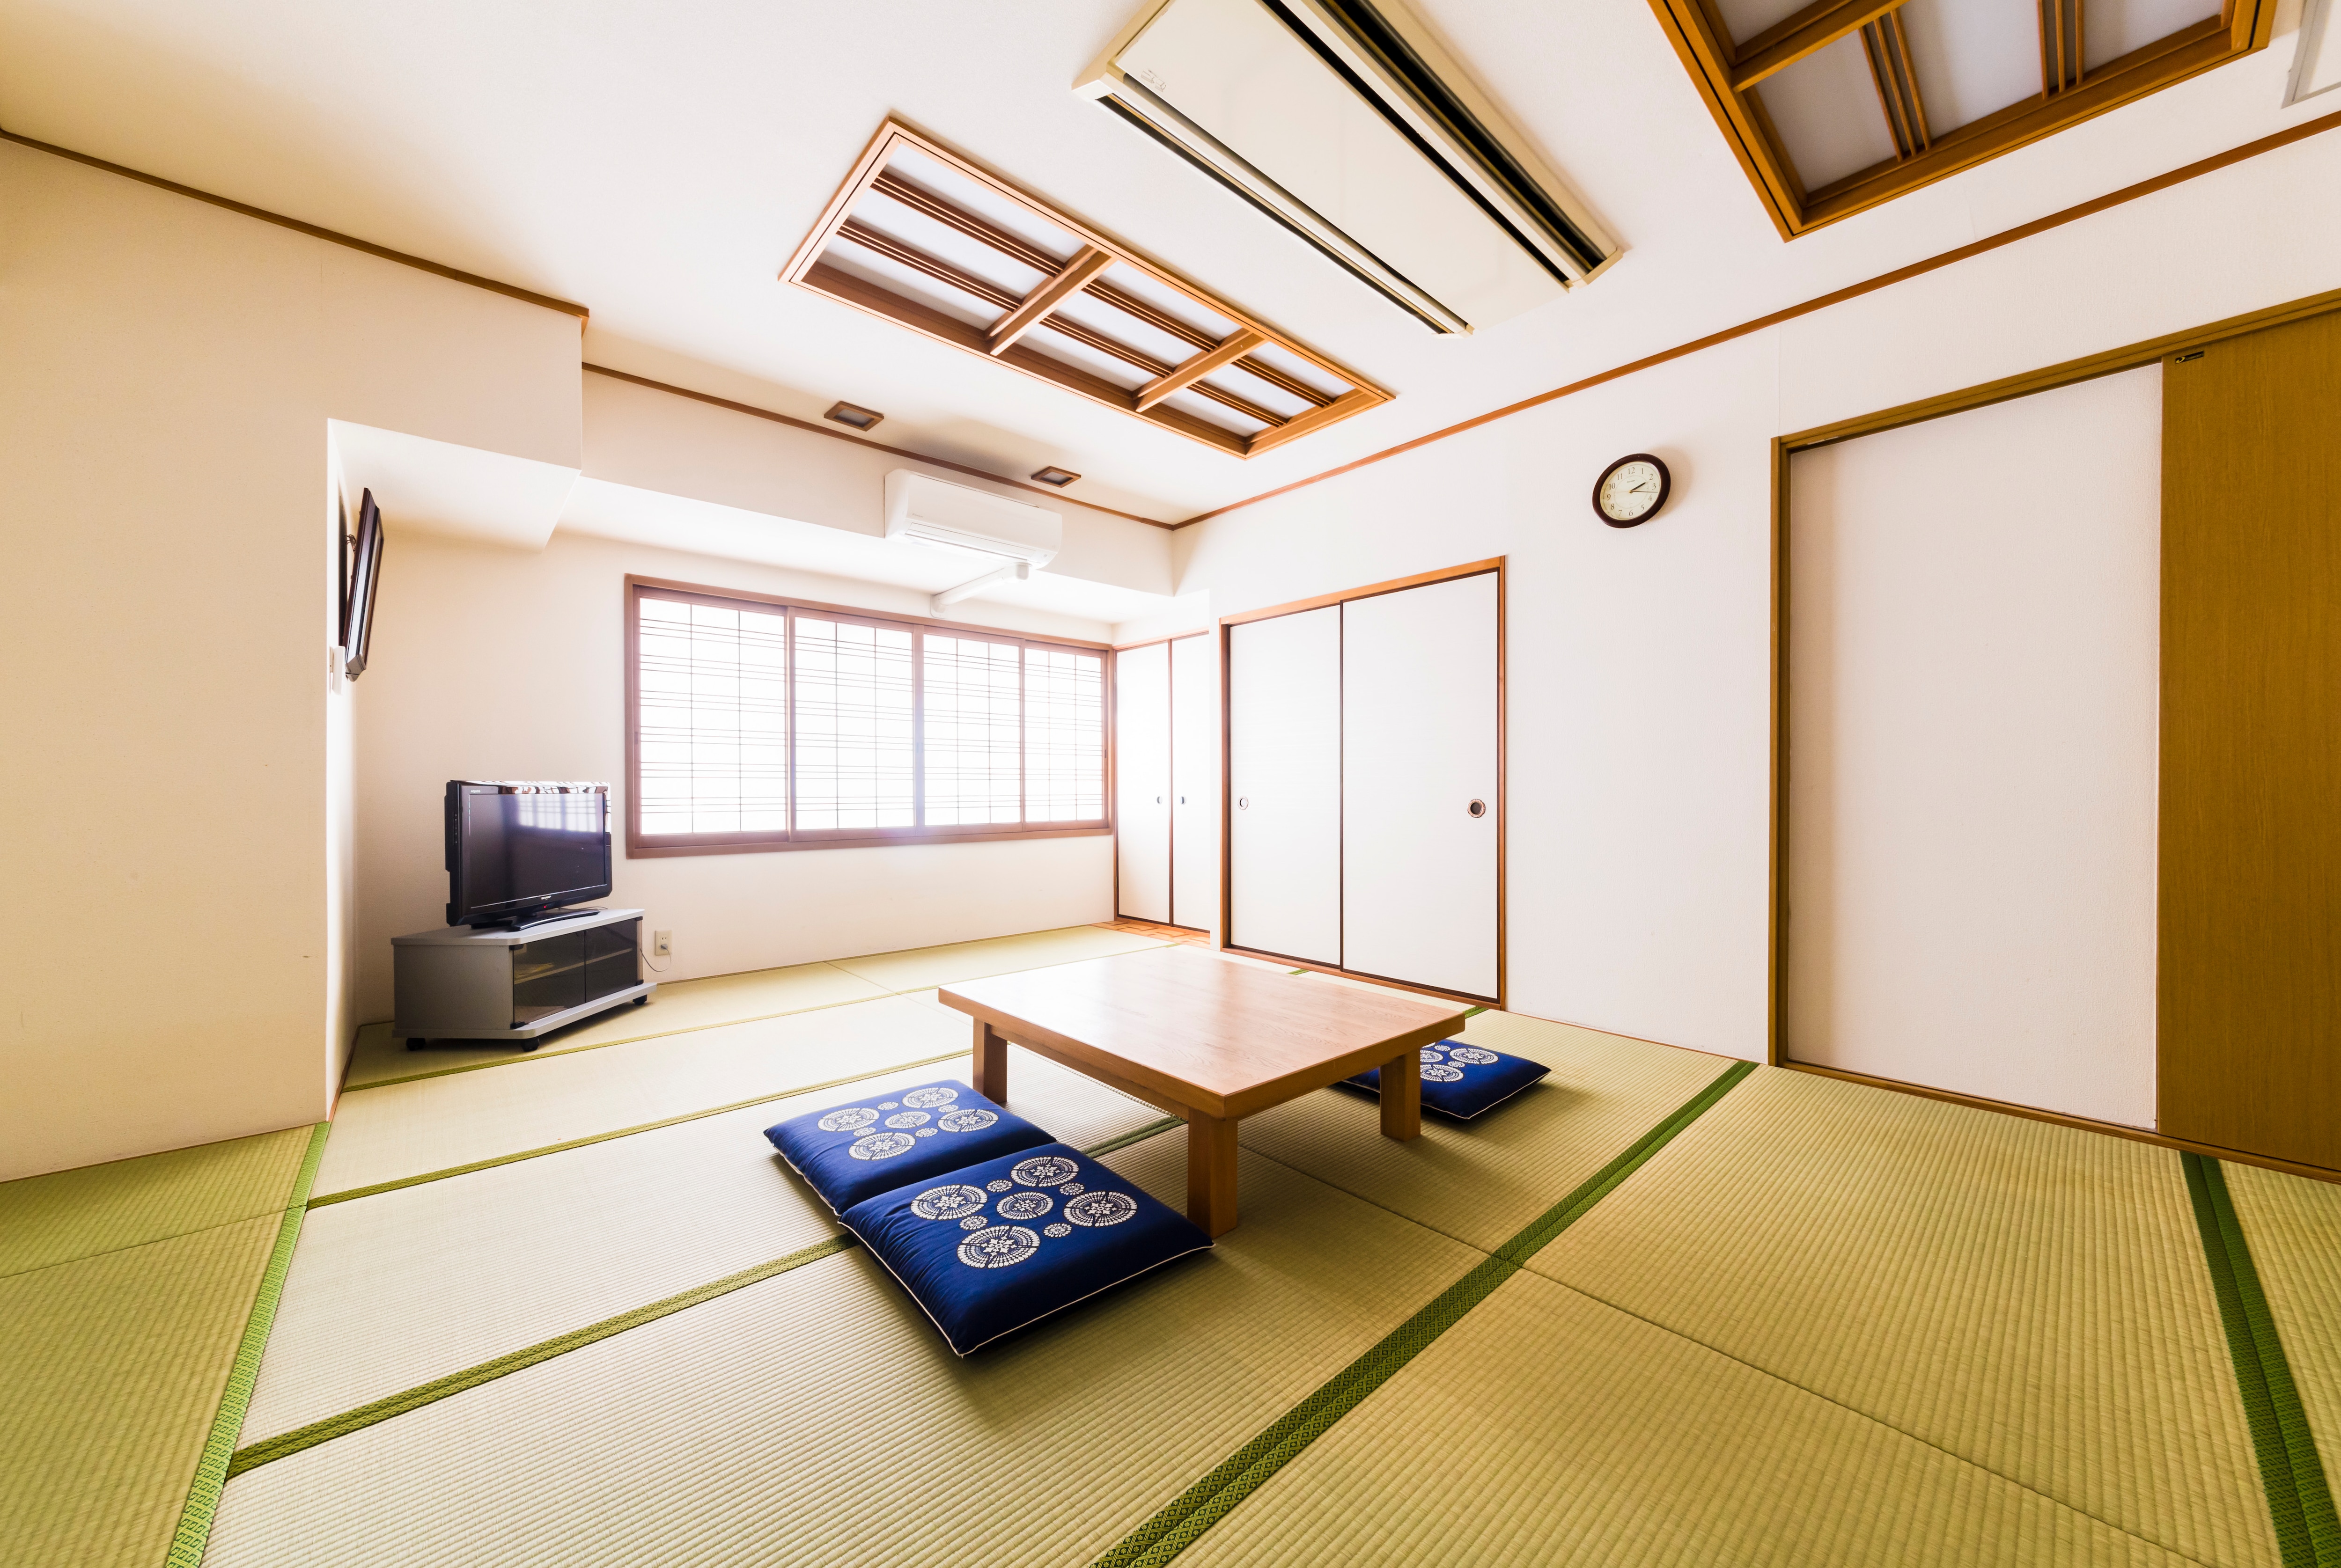 日式房间 14张榻榻米，可容纳 2 至 7 人。您可以在宽敞的房间里放松身心。